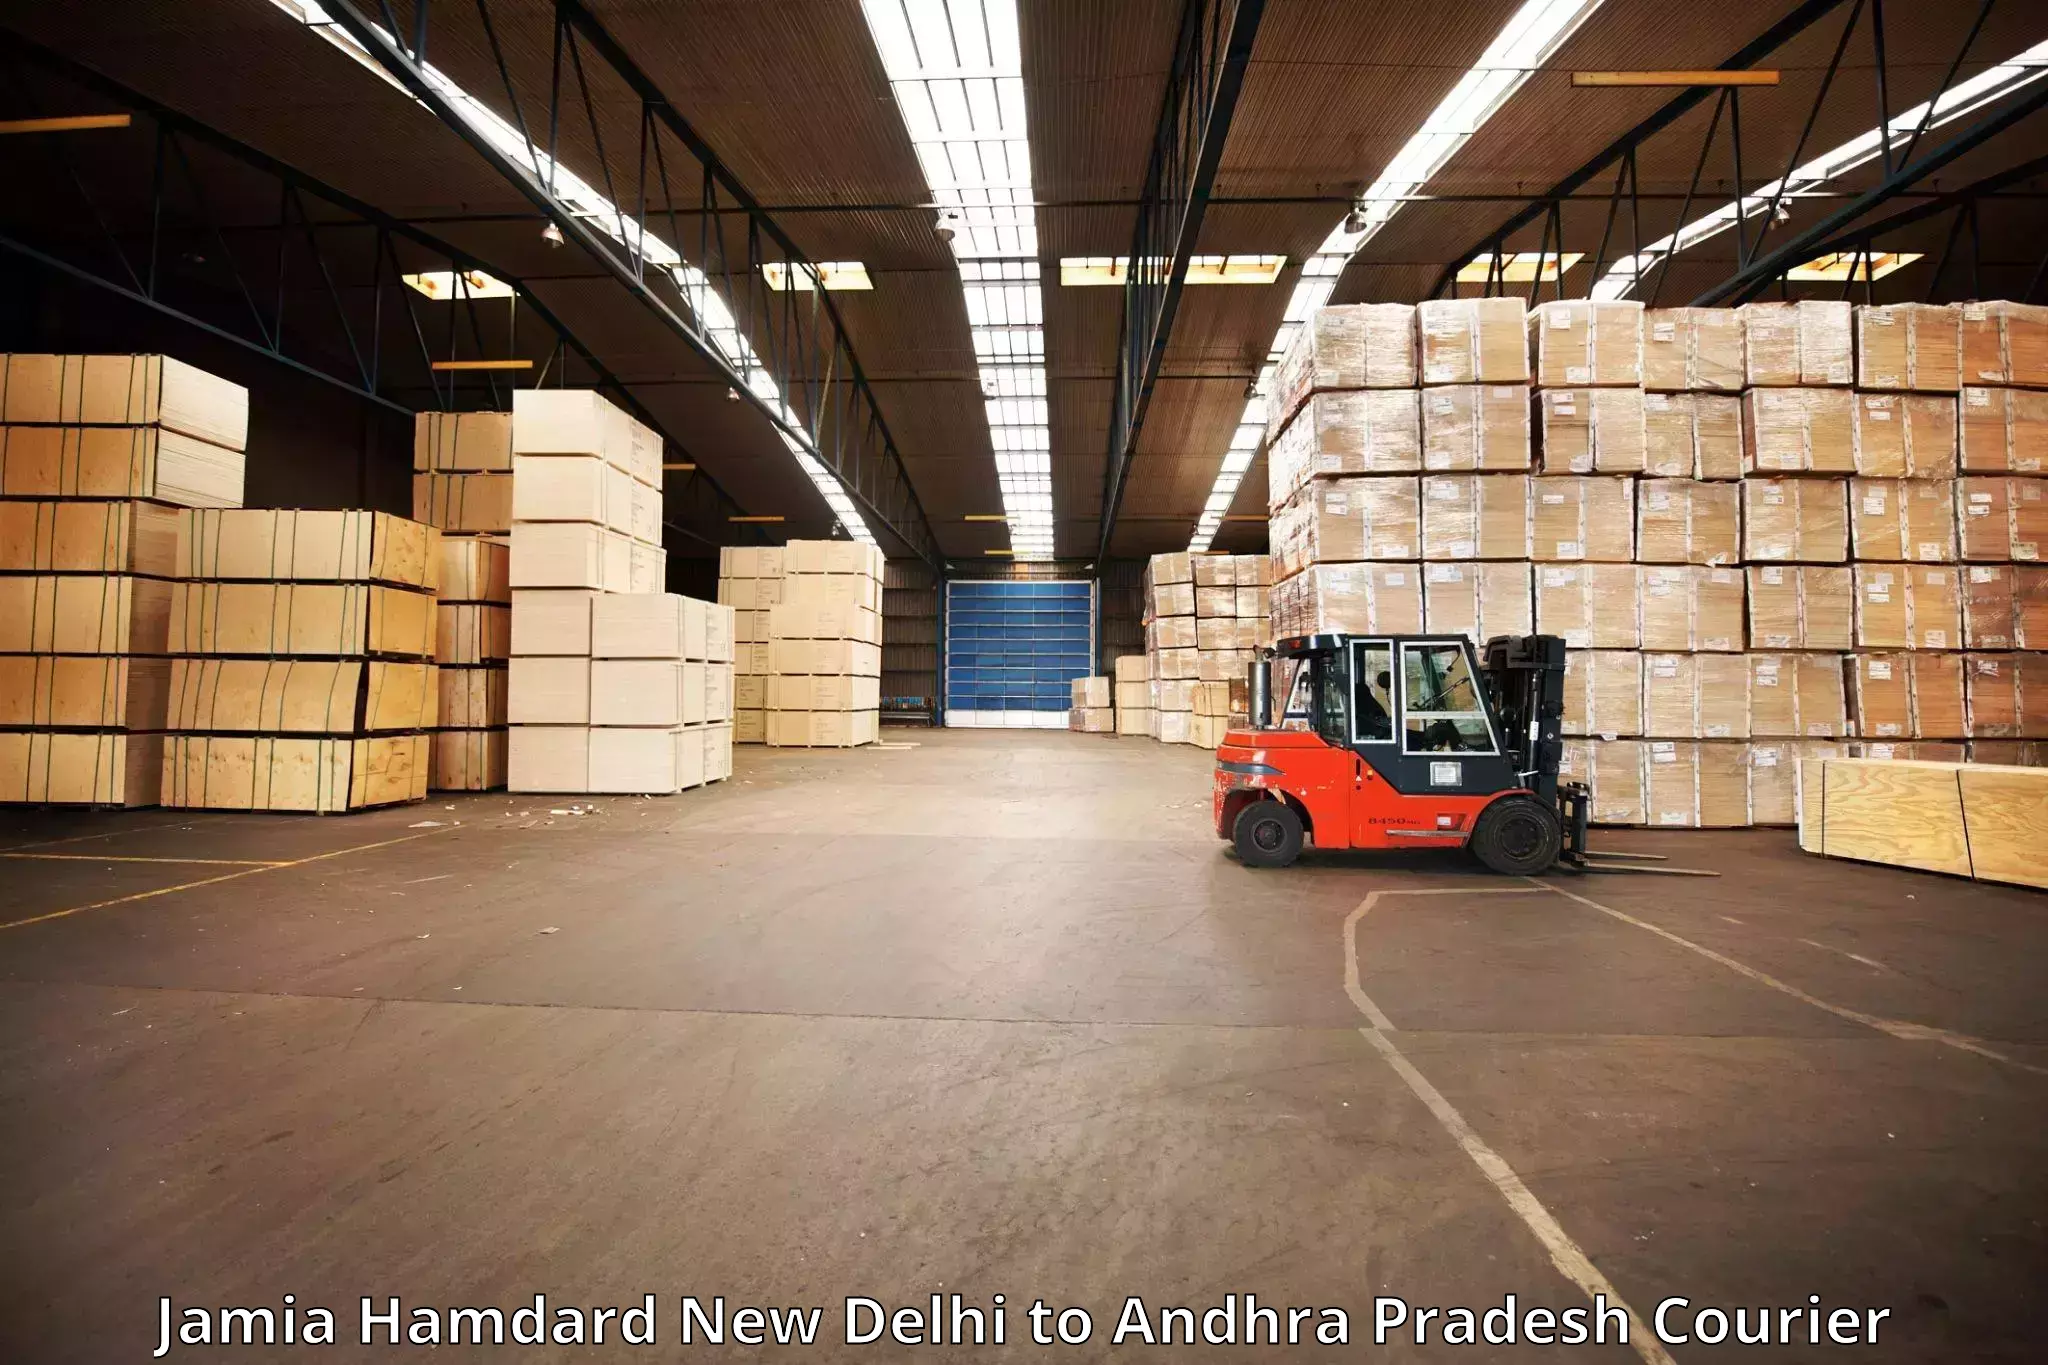 Baggage delivery technology Jamia Hamdard New Delhi to Andhra Pradesh